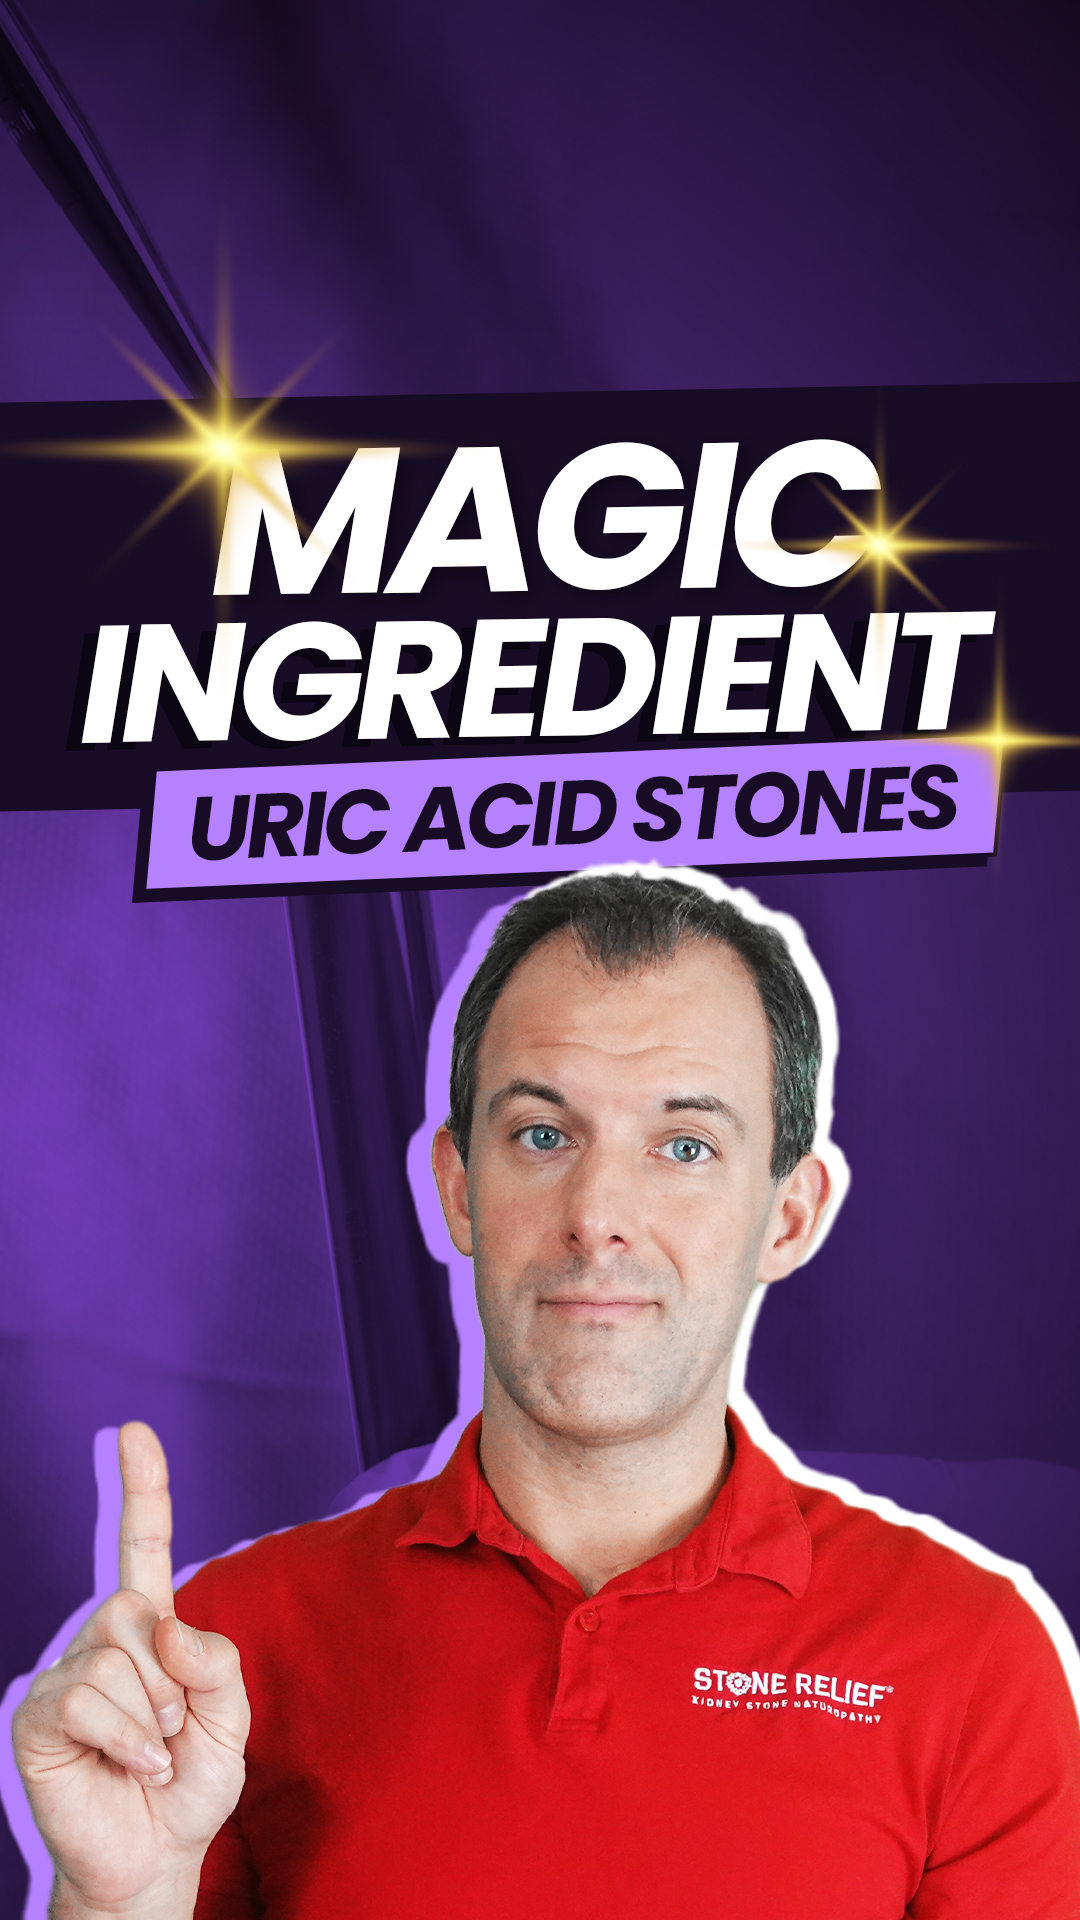 Uric acid stones have a magic ingredient?